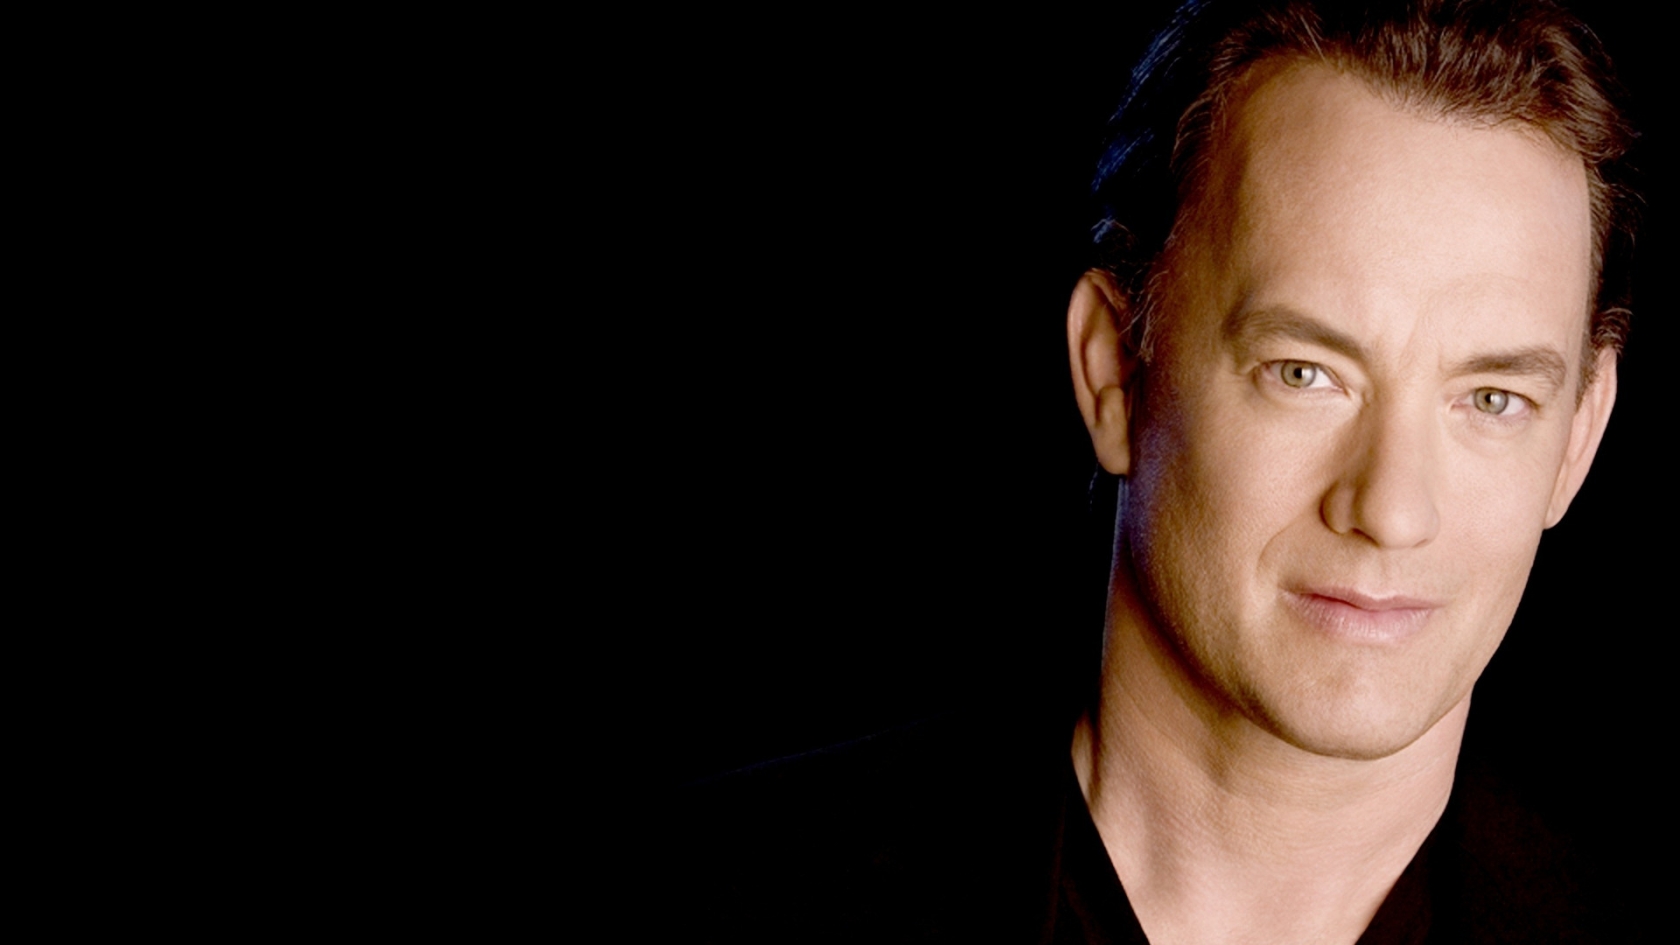 Tom Hanks for 1680 x 945 HDTV resolution